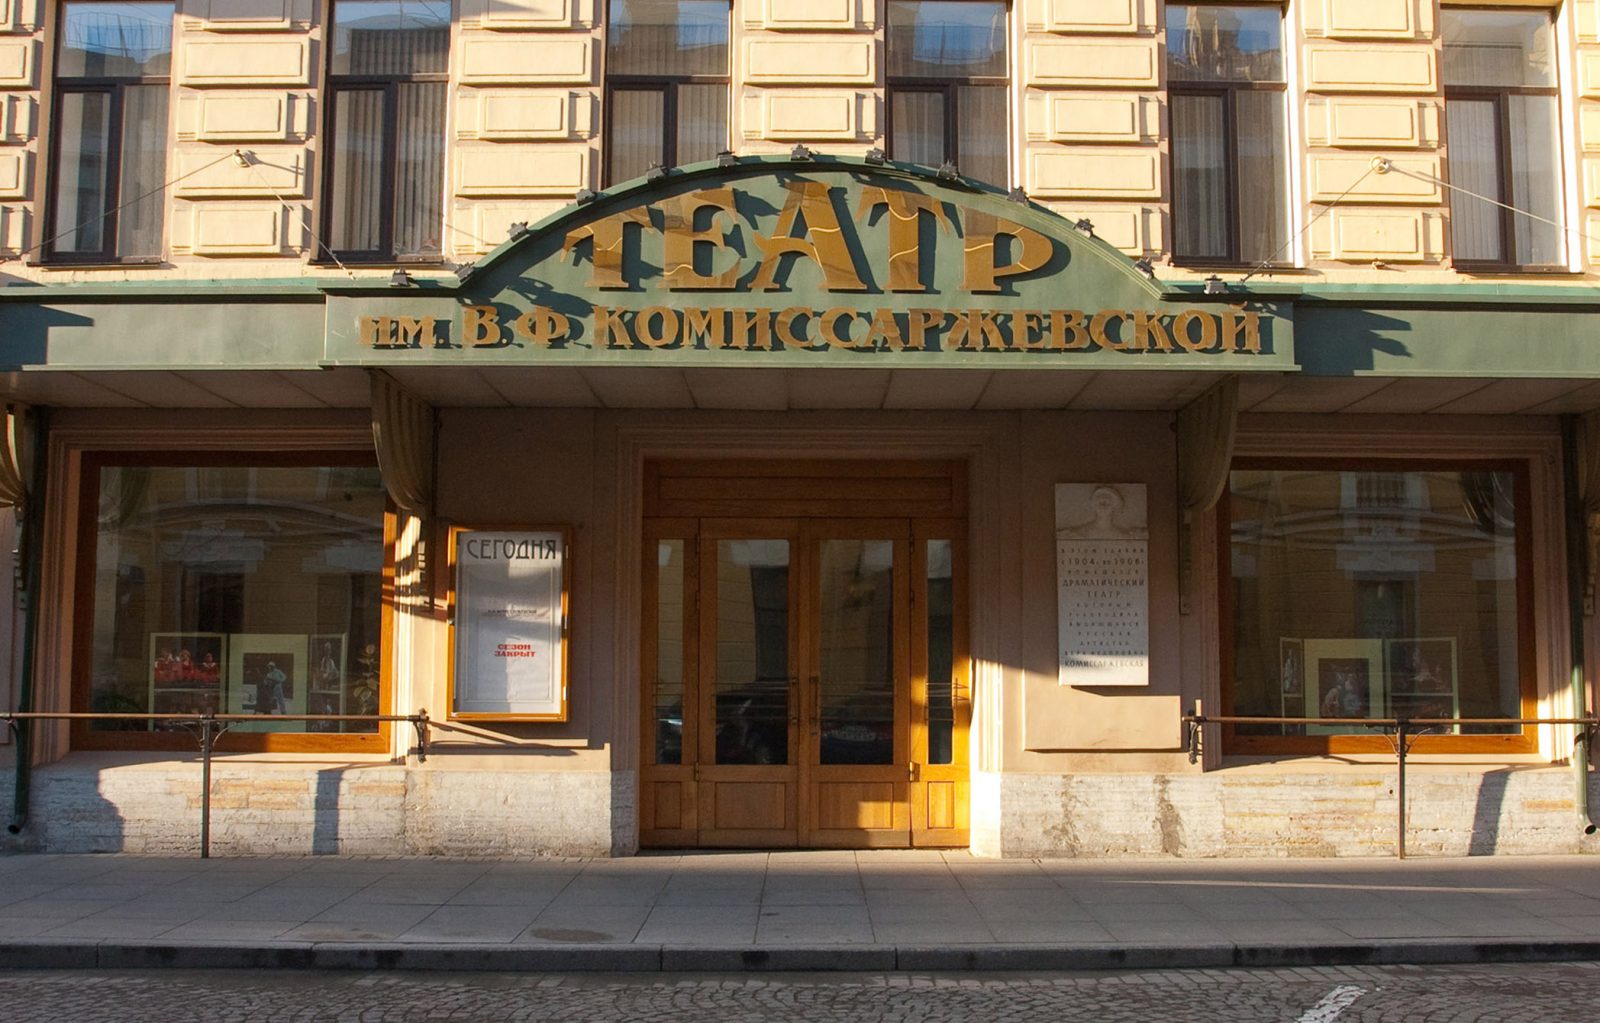 Драматический театр имени в ф комиссаржевской фото зала